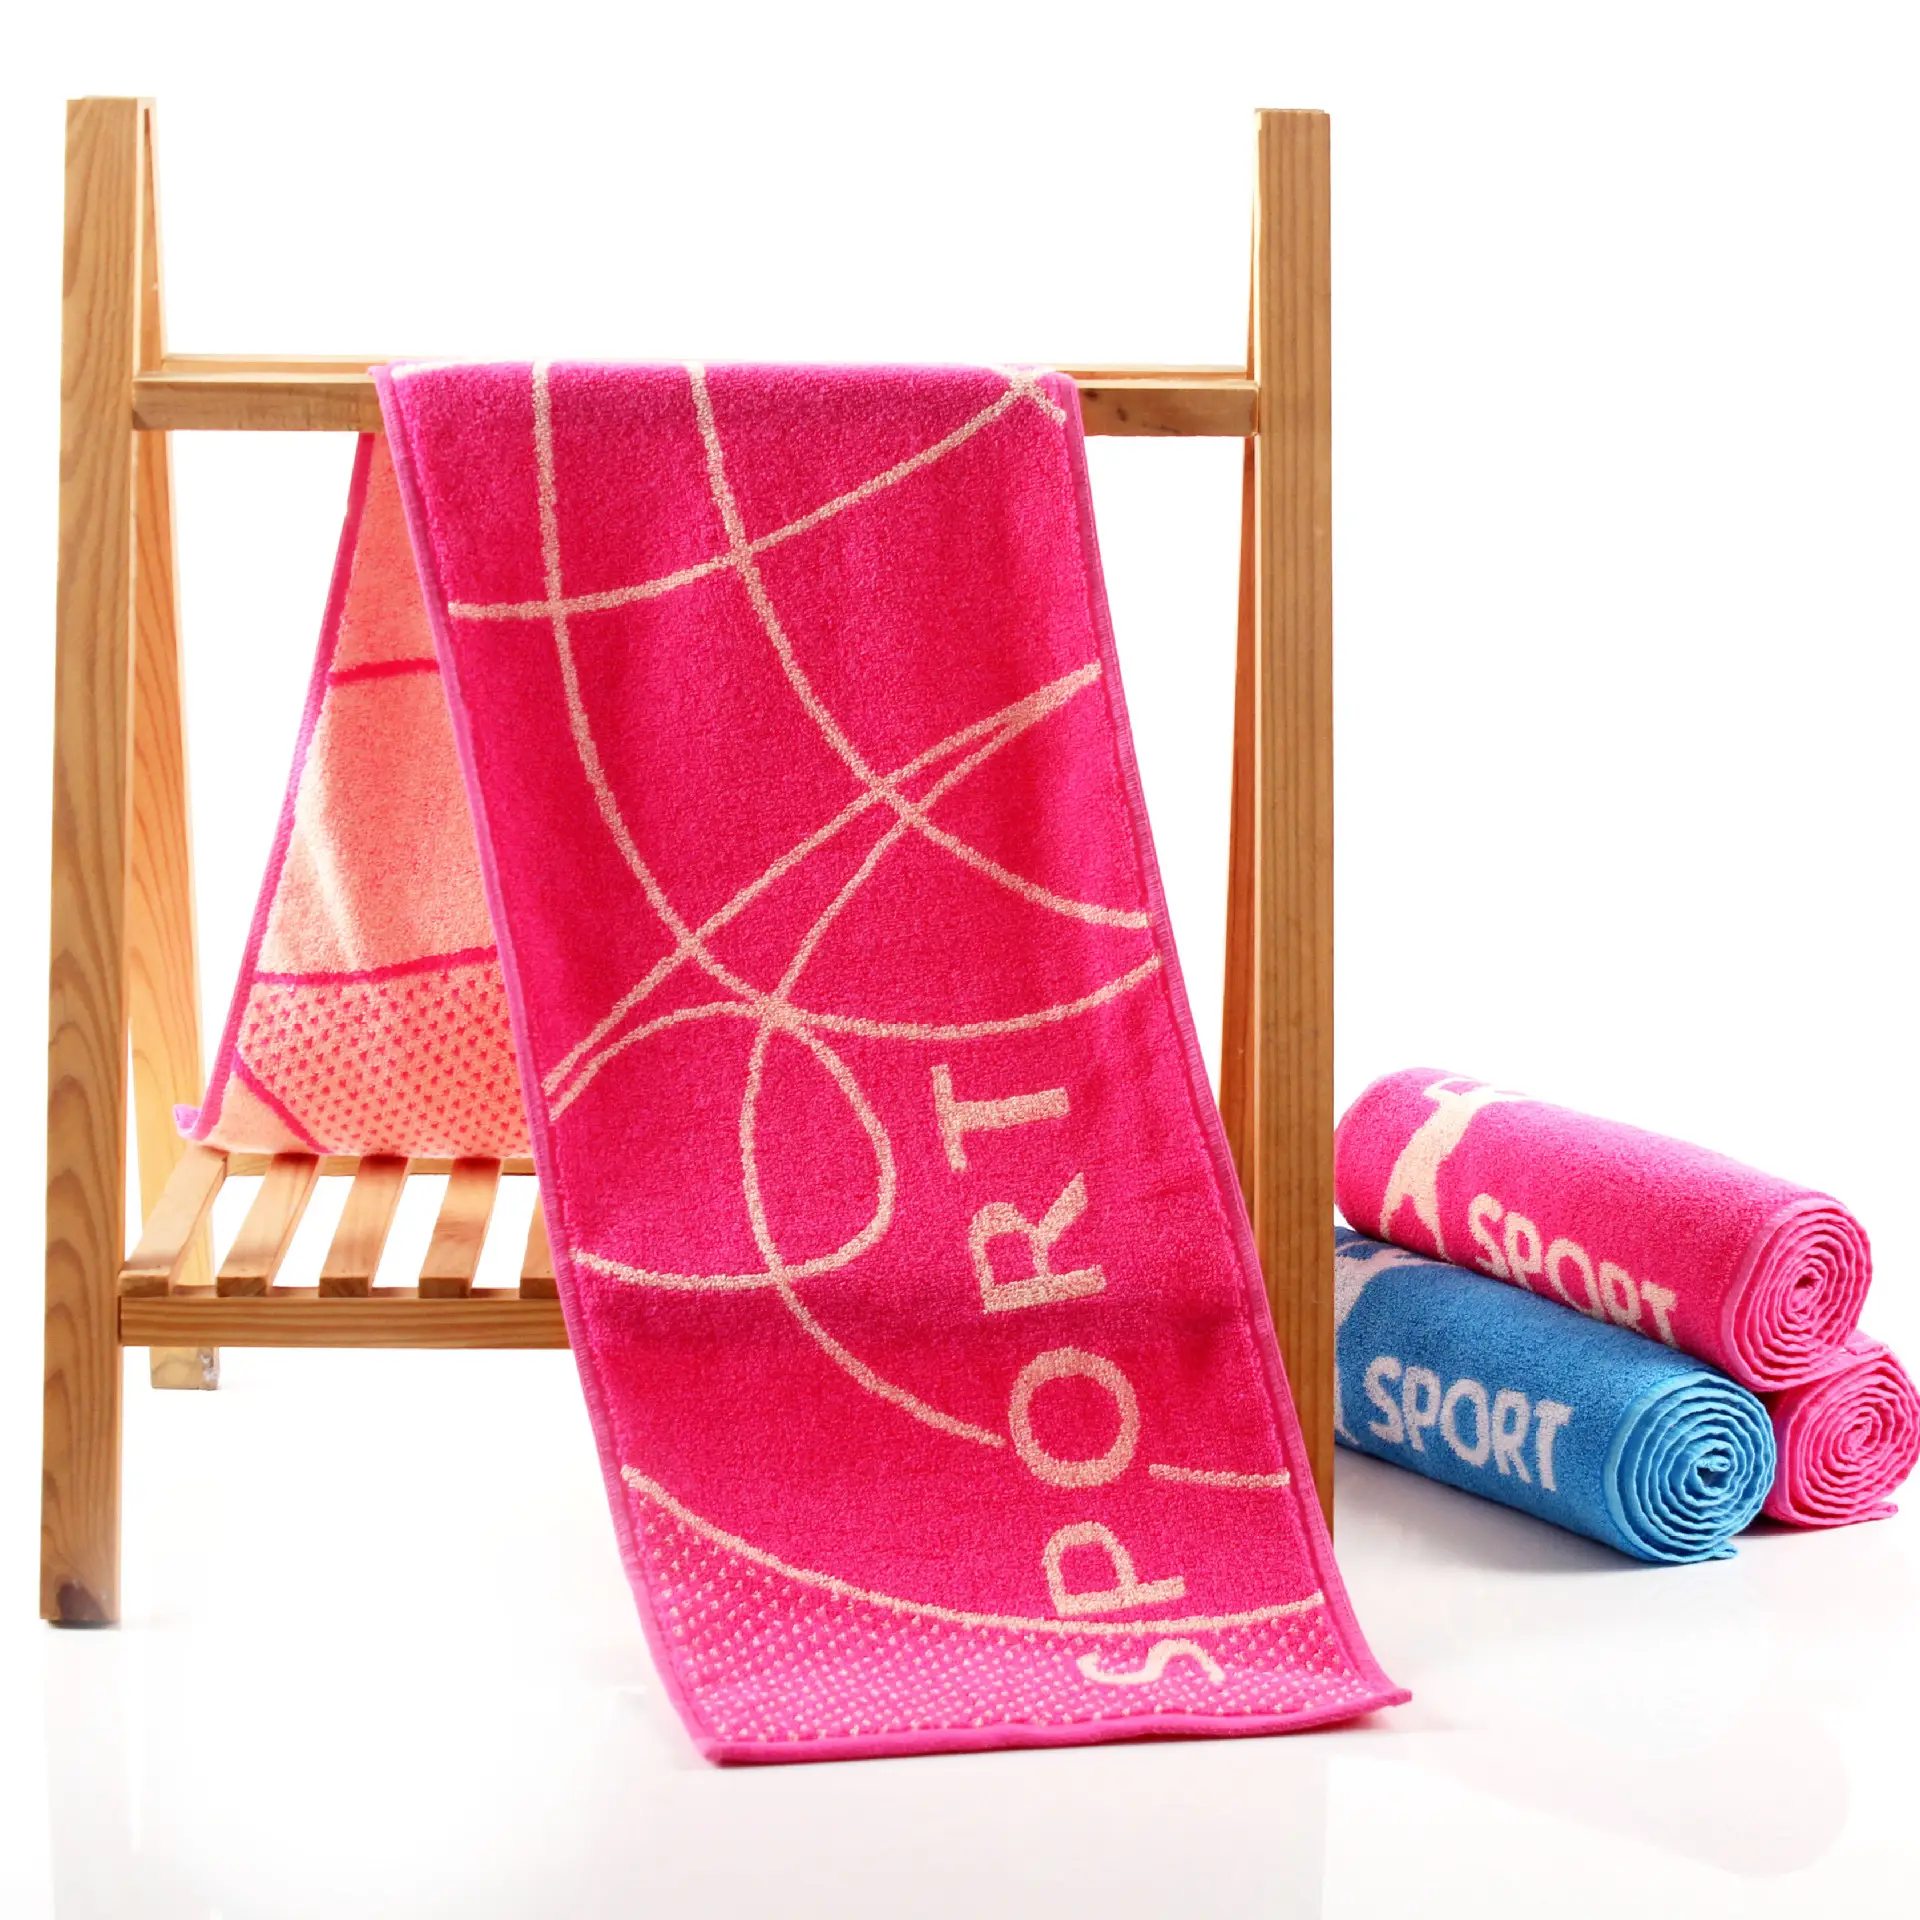 Factory wholesale color woven cotton sports towel jacquard logo gym absorbent towel badminton tennis portable